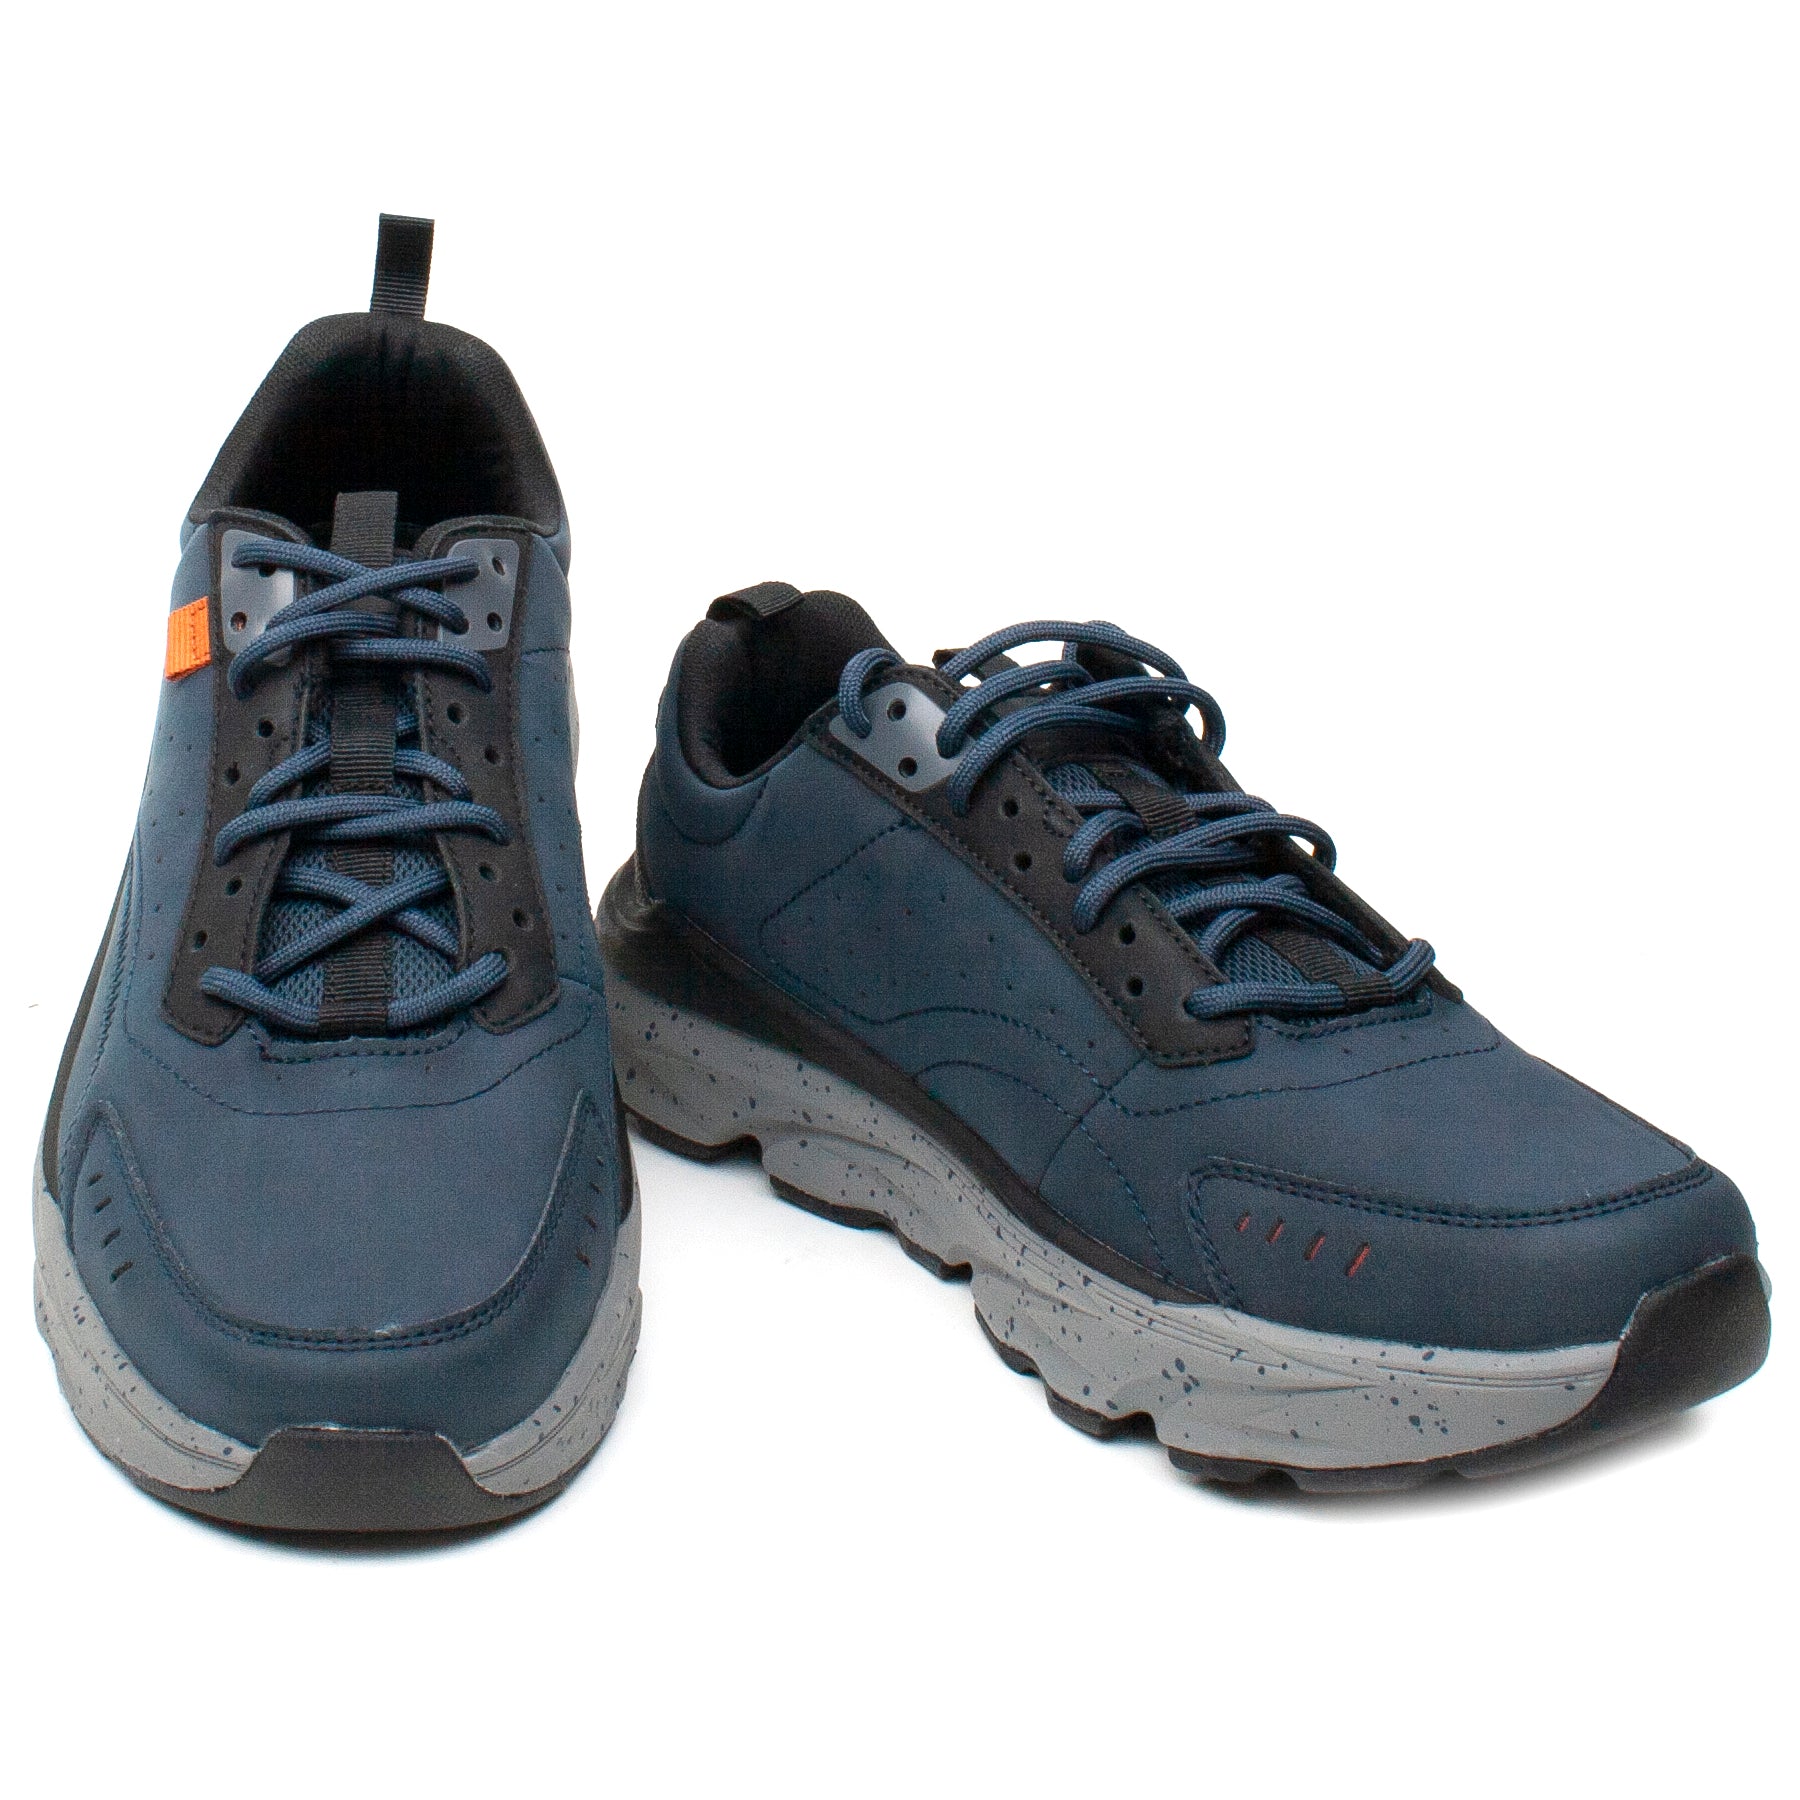 Skechers pantofi barbati sport 210342 bleumarin IB2187-BLM